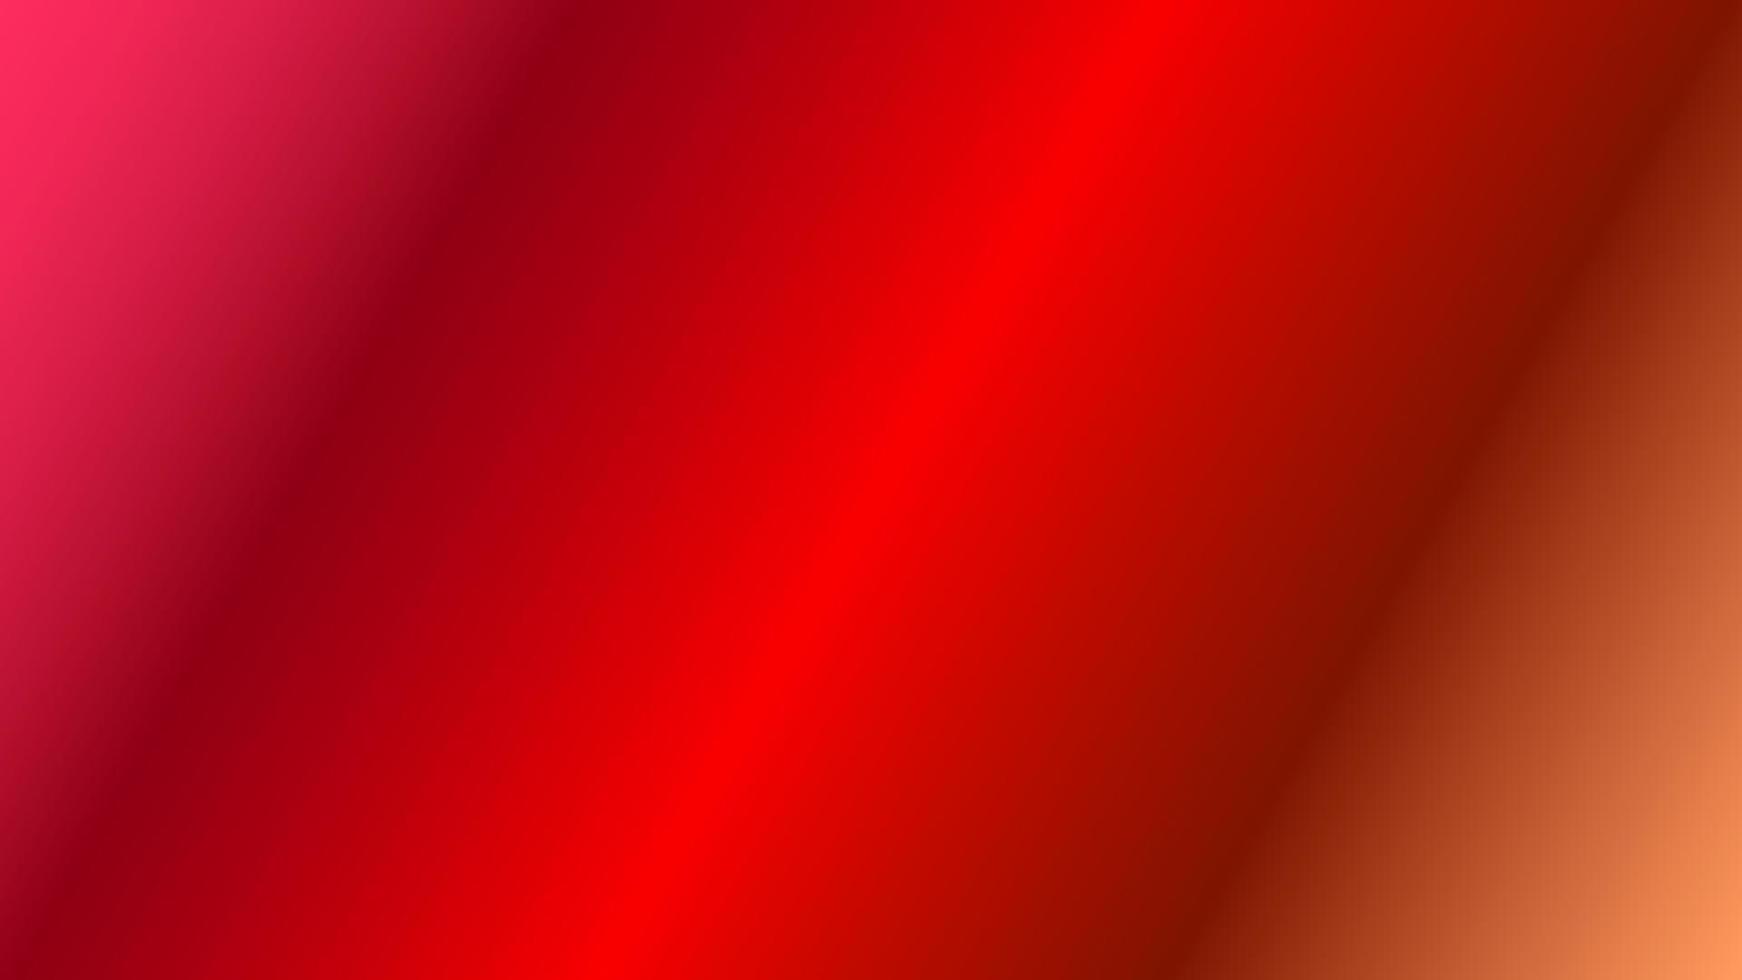 abstrakt gradient bakgrund röd, orange perfekt för design, tapeter, marknadsföring, presentation, hemsida, banner etc. illustration bakgrund vektor